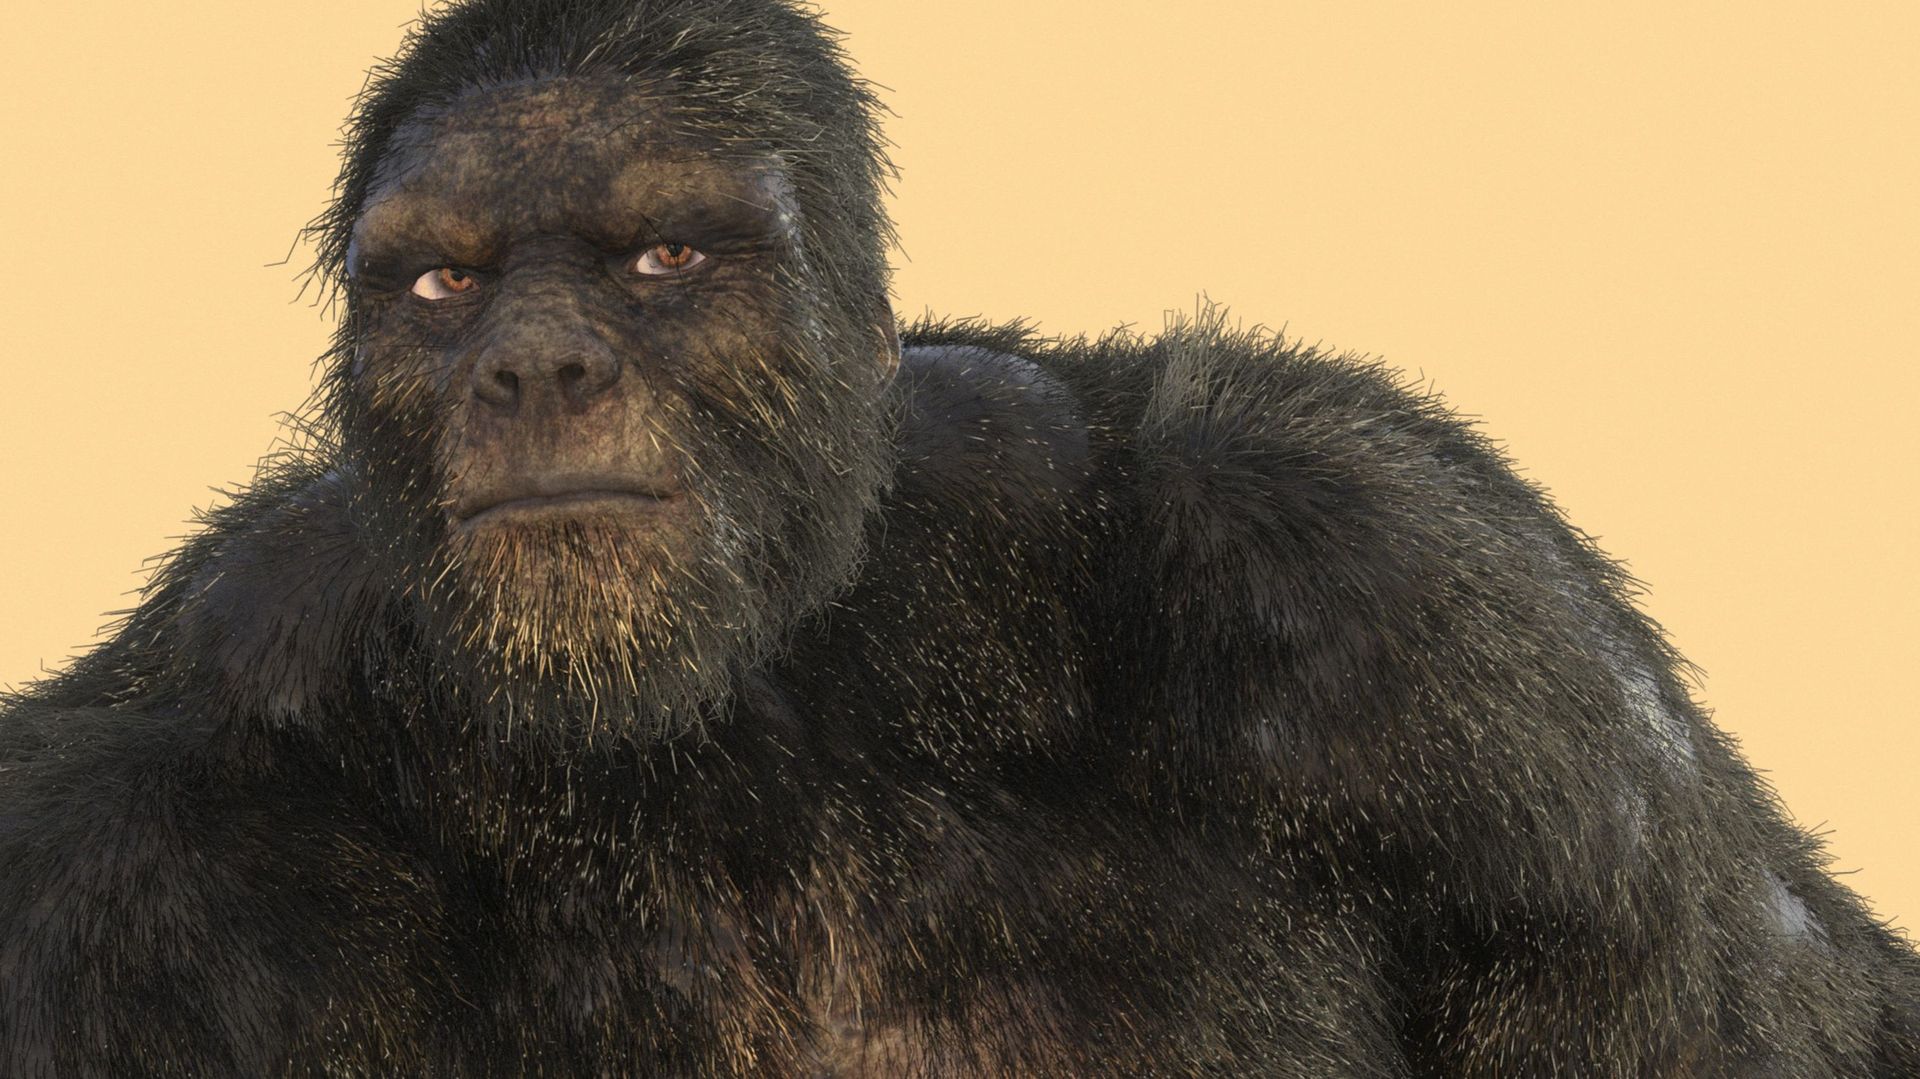 L’Alamsty est-il une sorte d’hominien rescapé, c’est-à-dire un de nos cousins éloignés qui auraient survécu jusqu’à aujourd’hui ? Ou s’agit-il plutôt d’un grand singe inconnu de type asiatique ? 